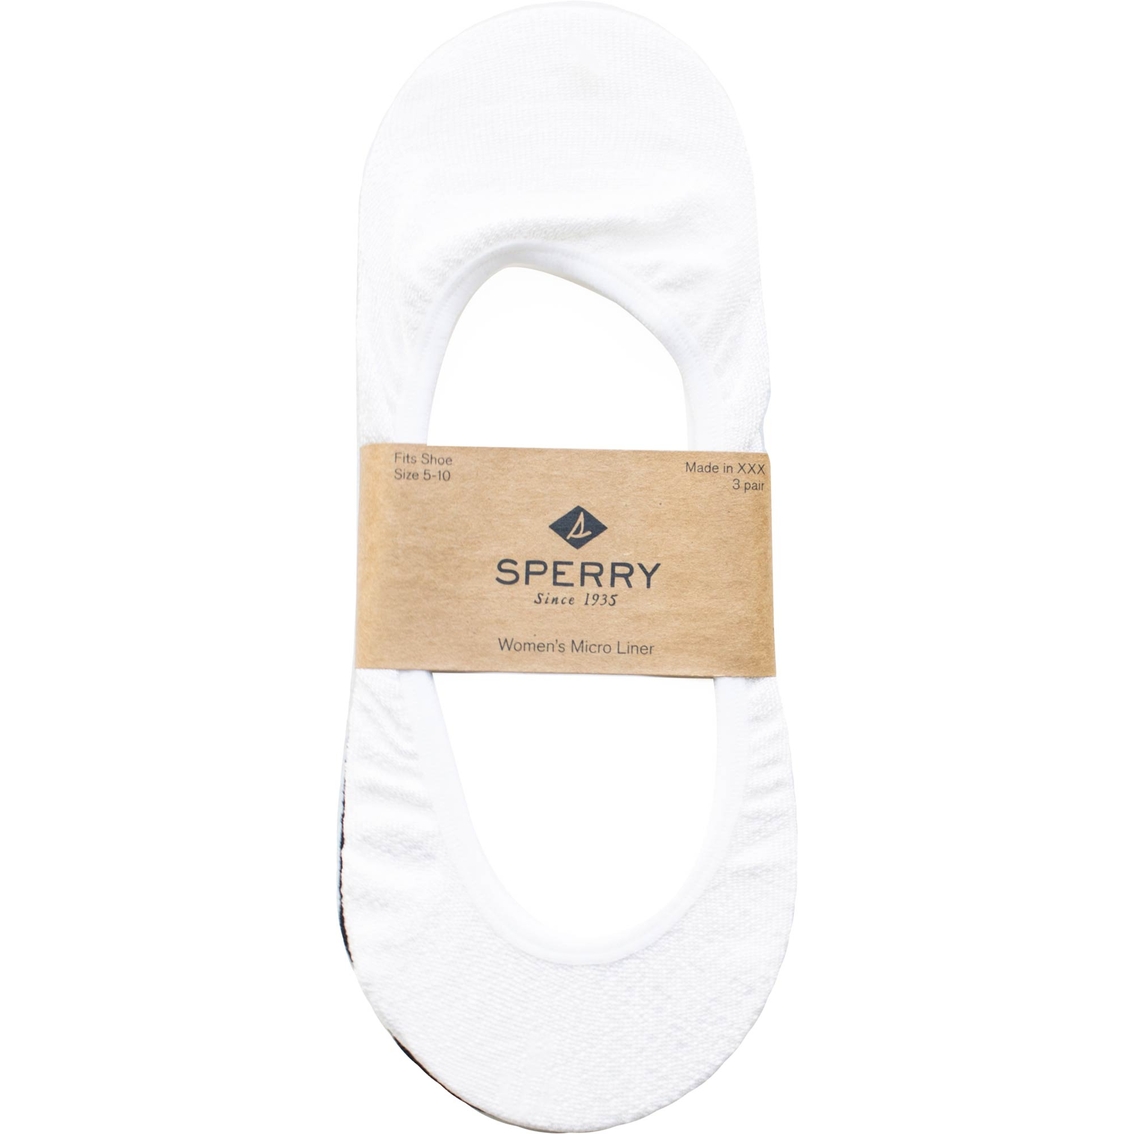 Sperry Women's Micro Liner Socks 3 Pk. - Image 3 of 3